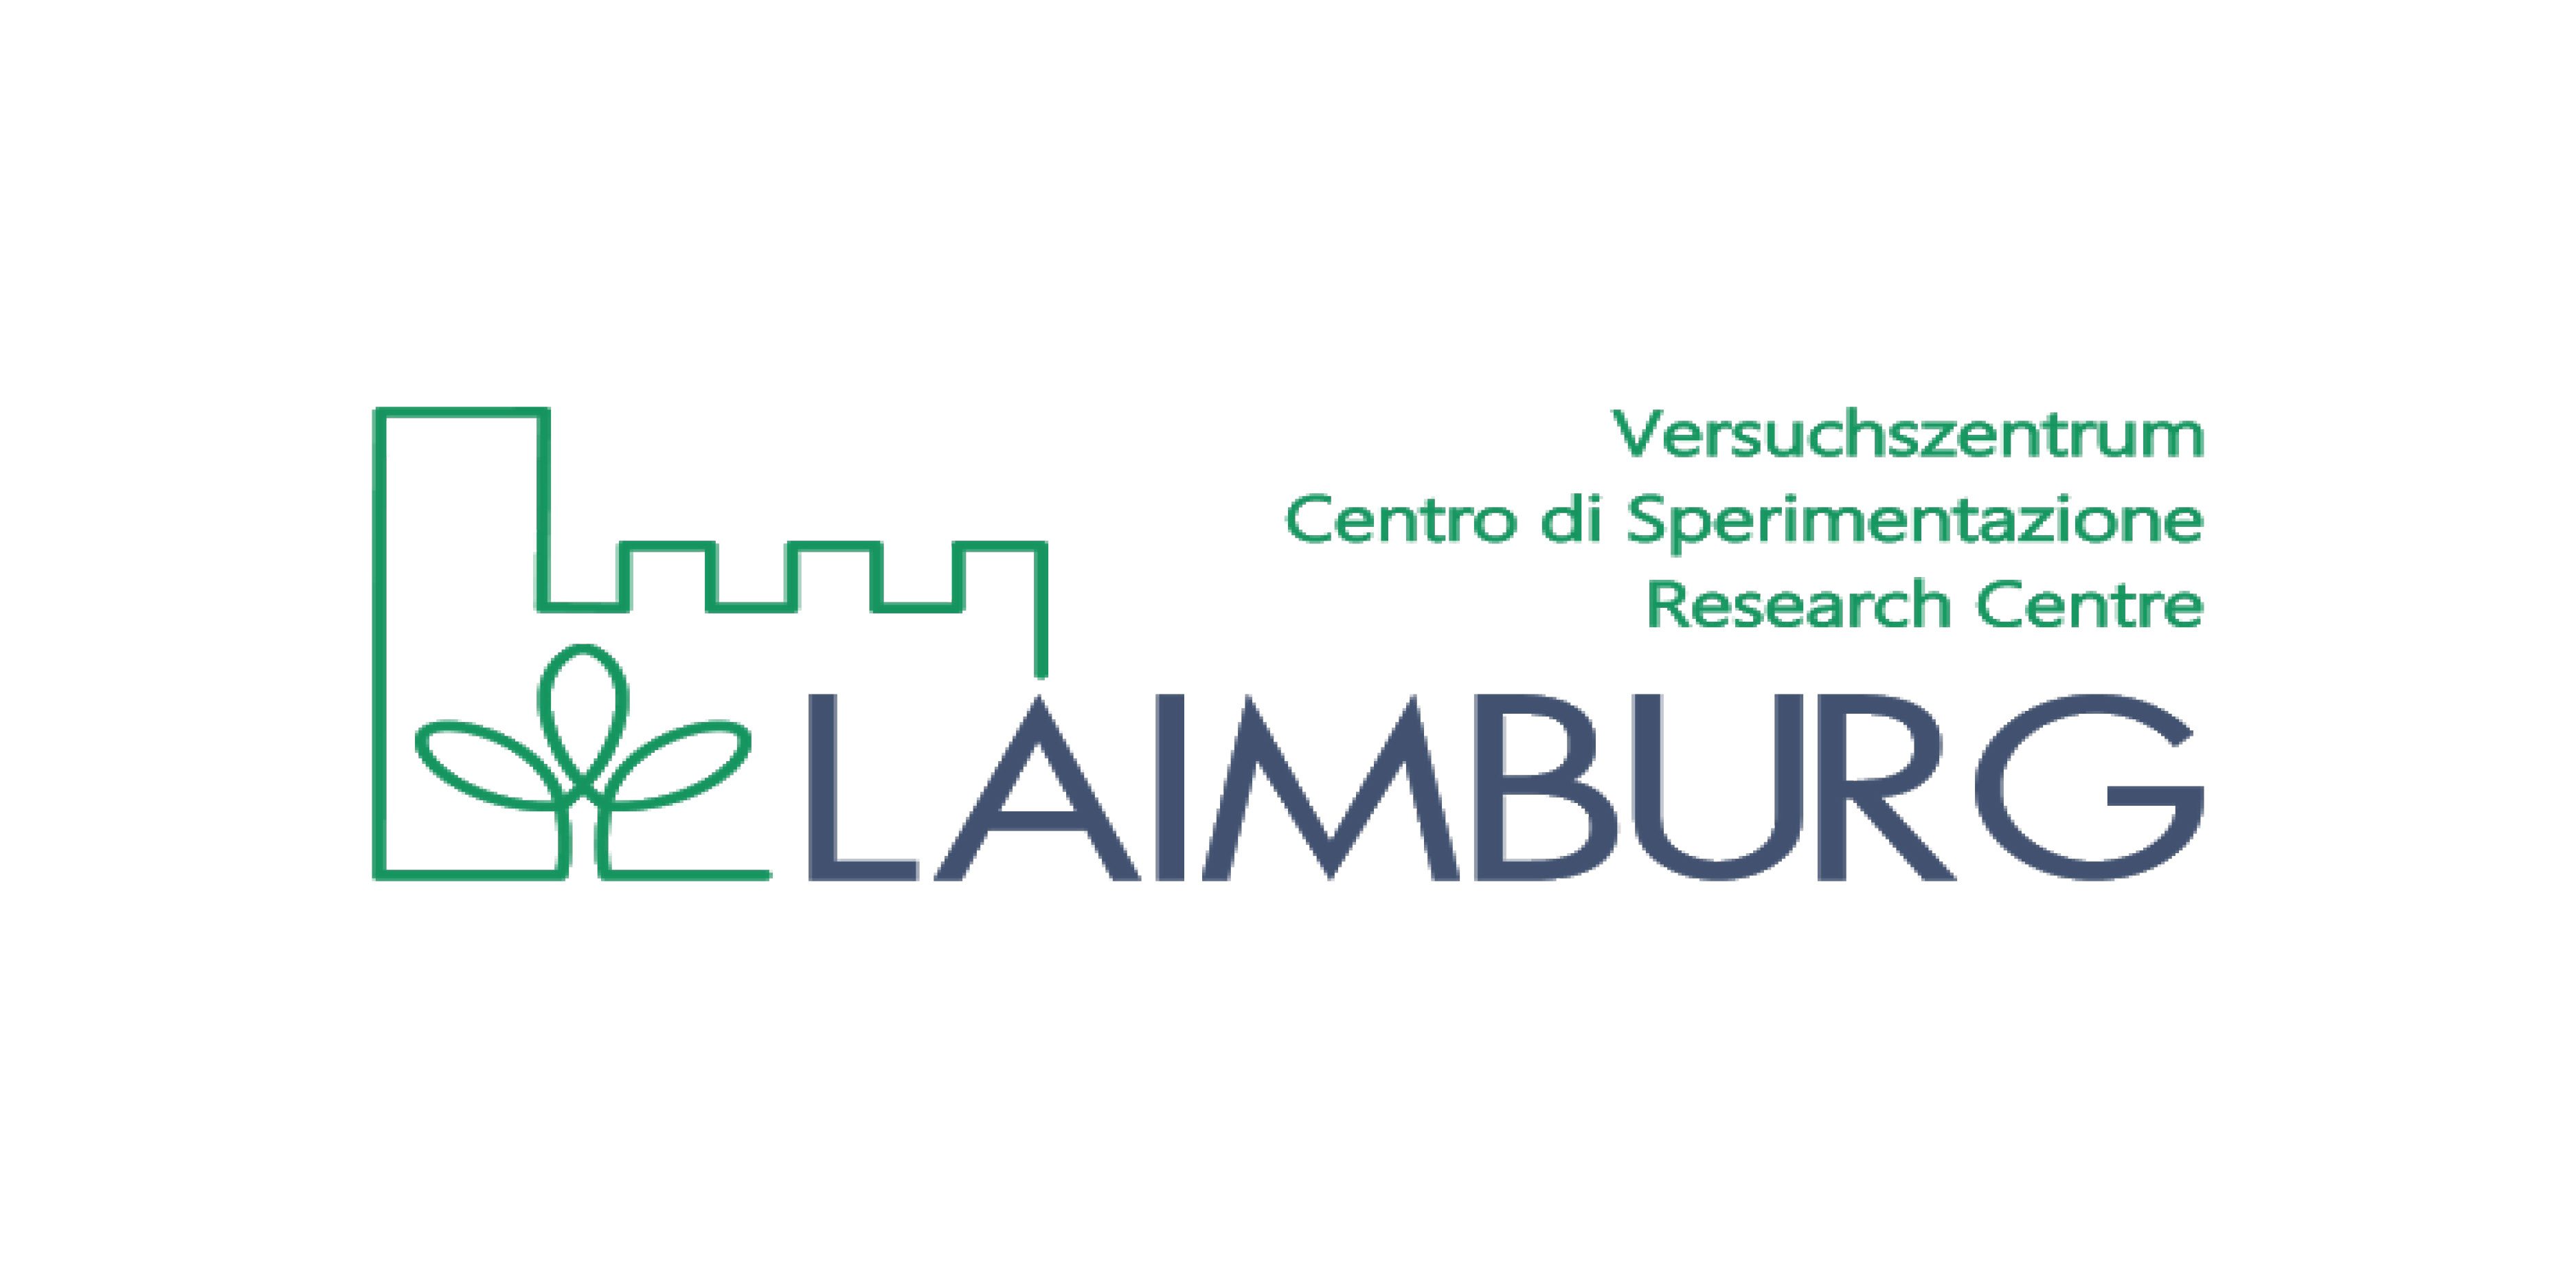 Versuchszentrum Laimburg | Centro di Sperimentazione